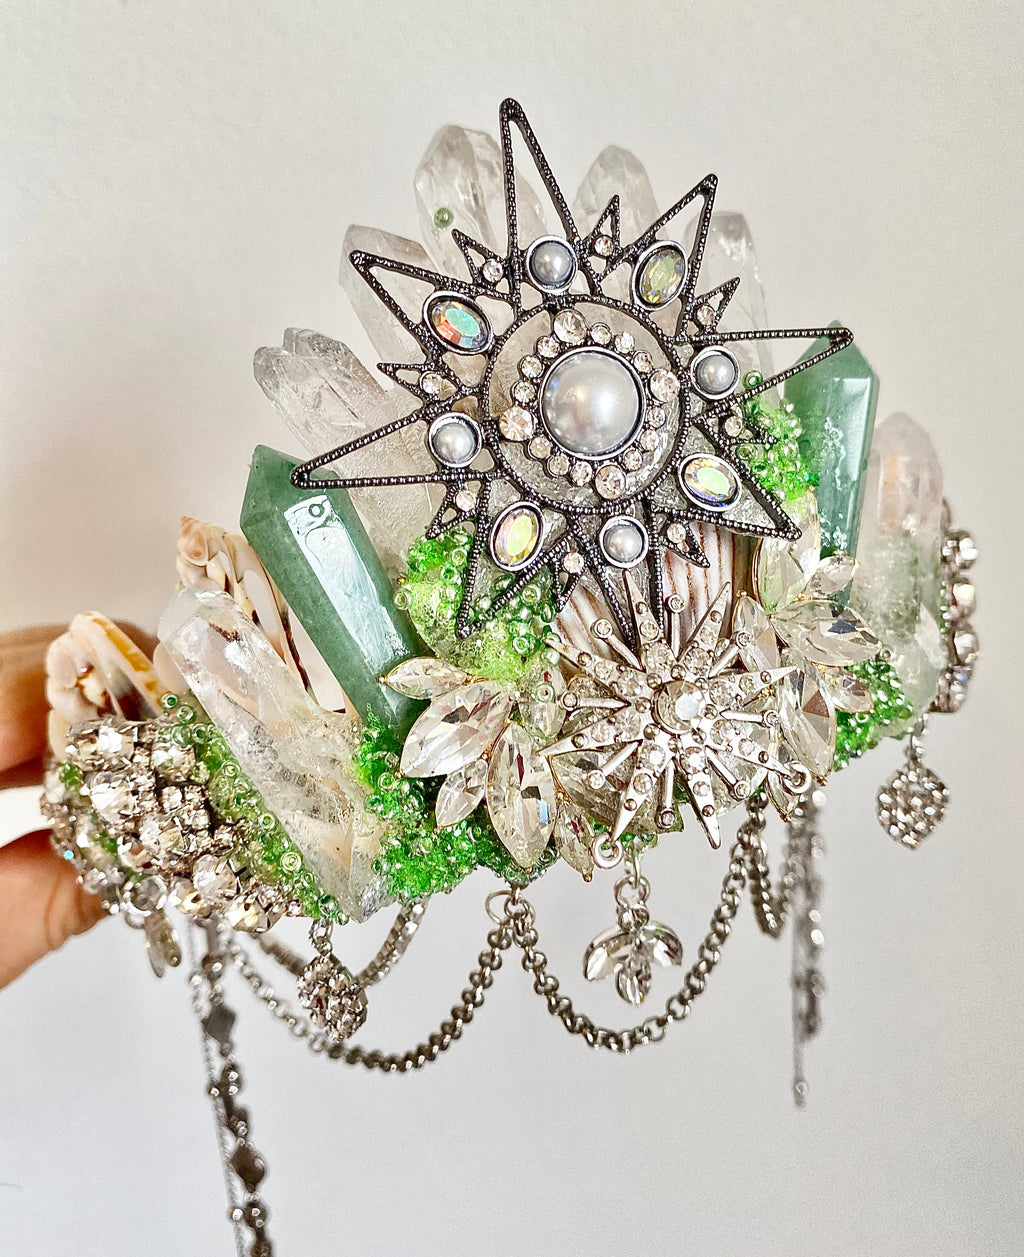 Aventurine & clear quartz mermaid crown